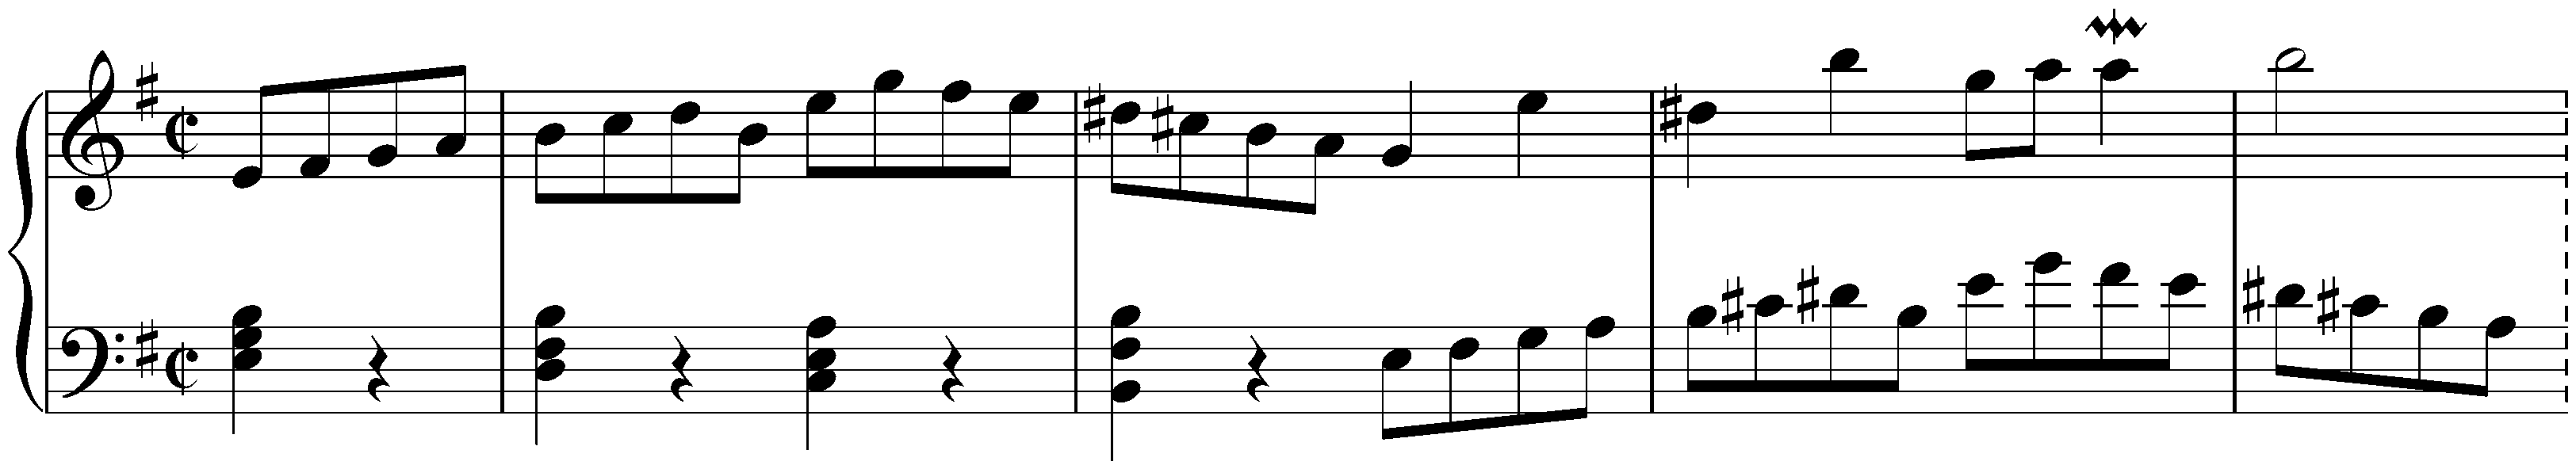 Partita no. 6 in E minor, BWV 830; 4. Air